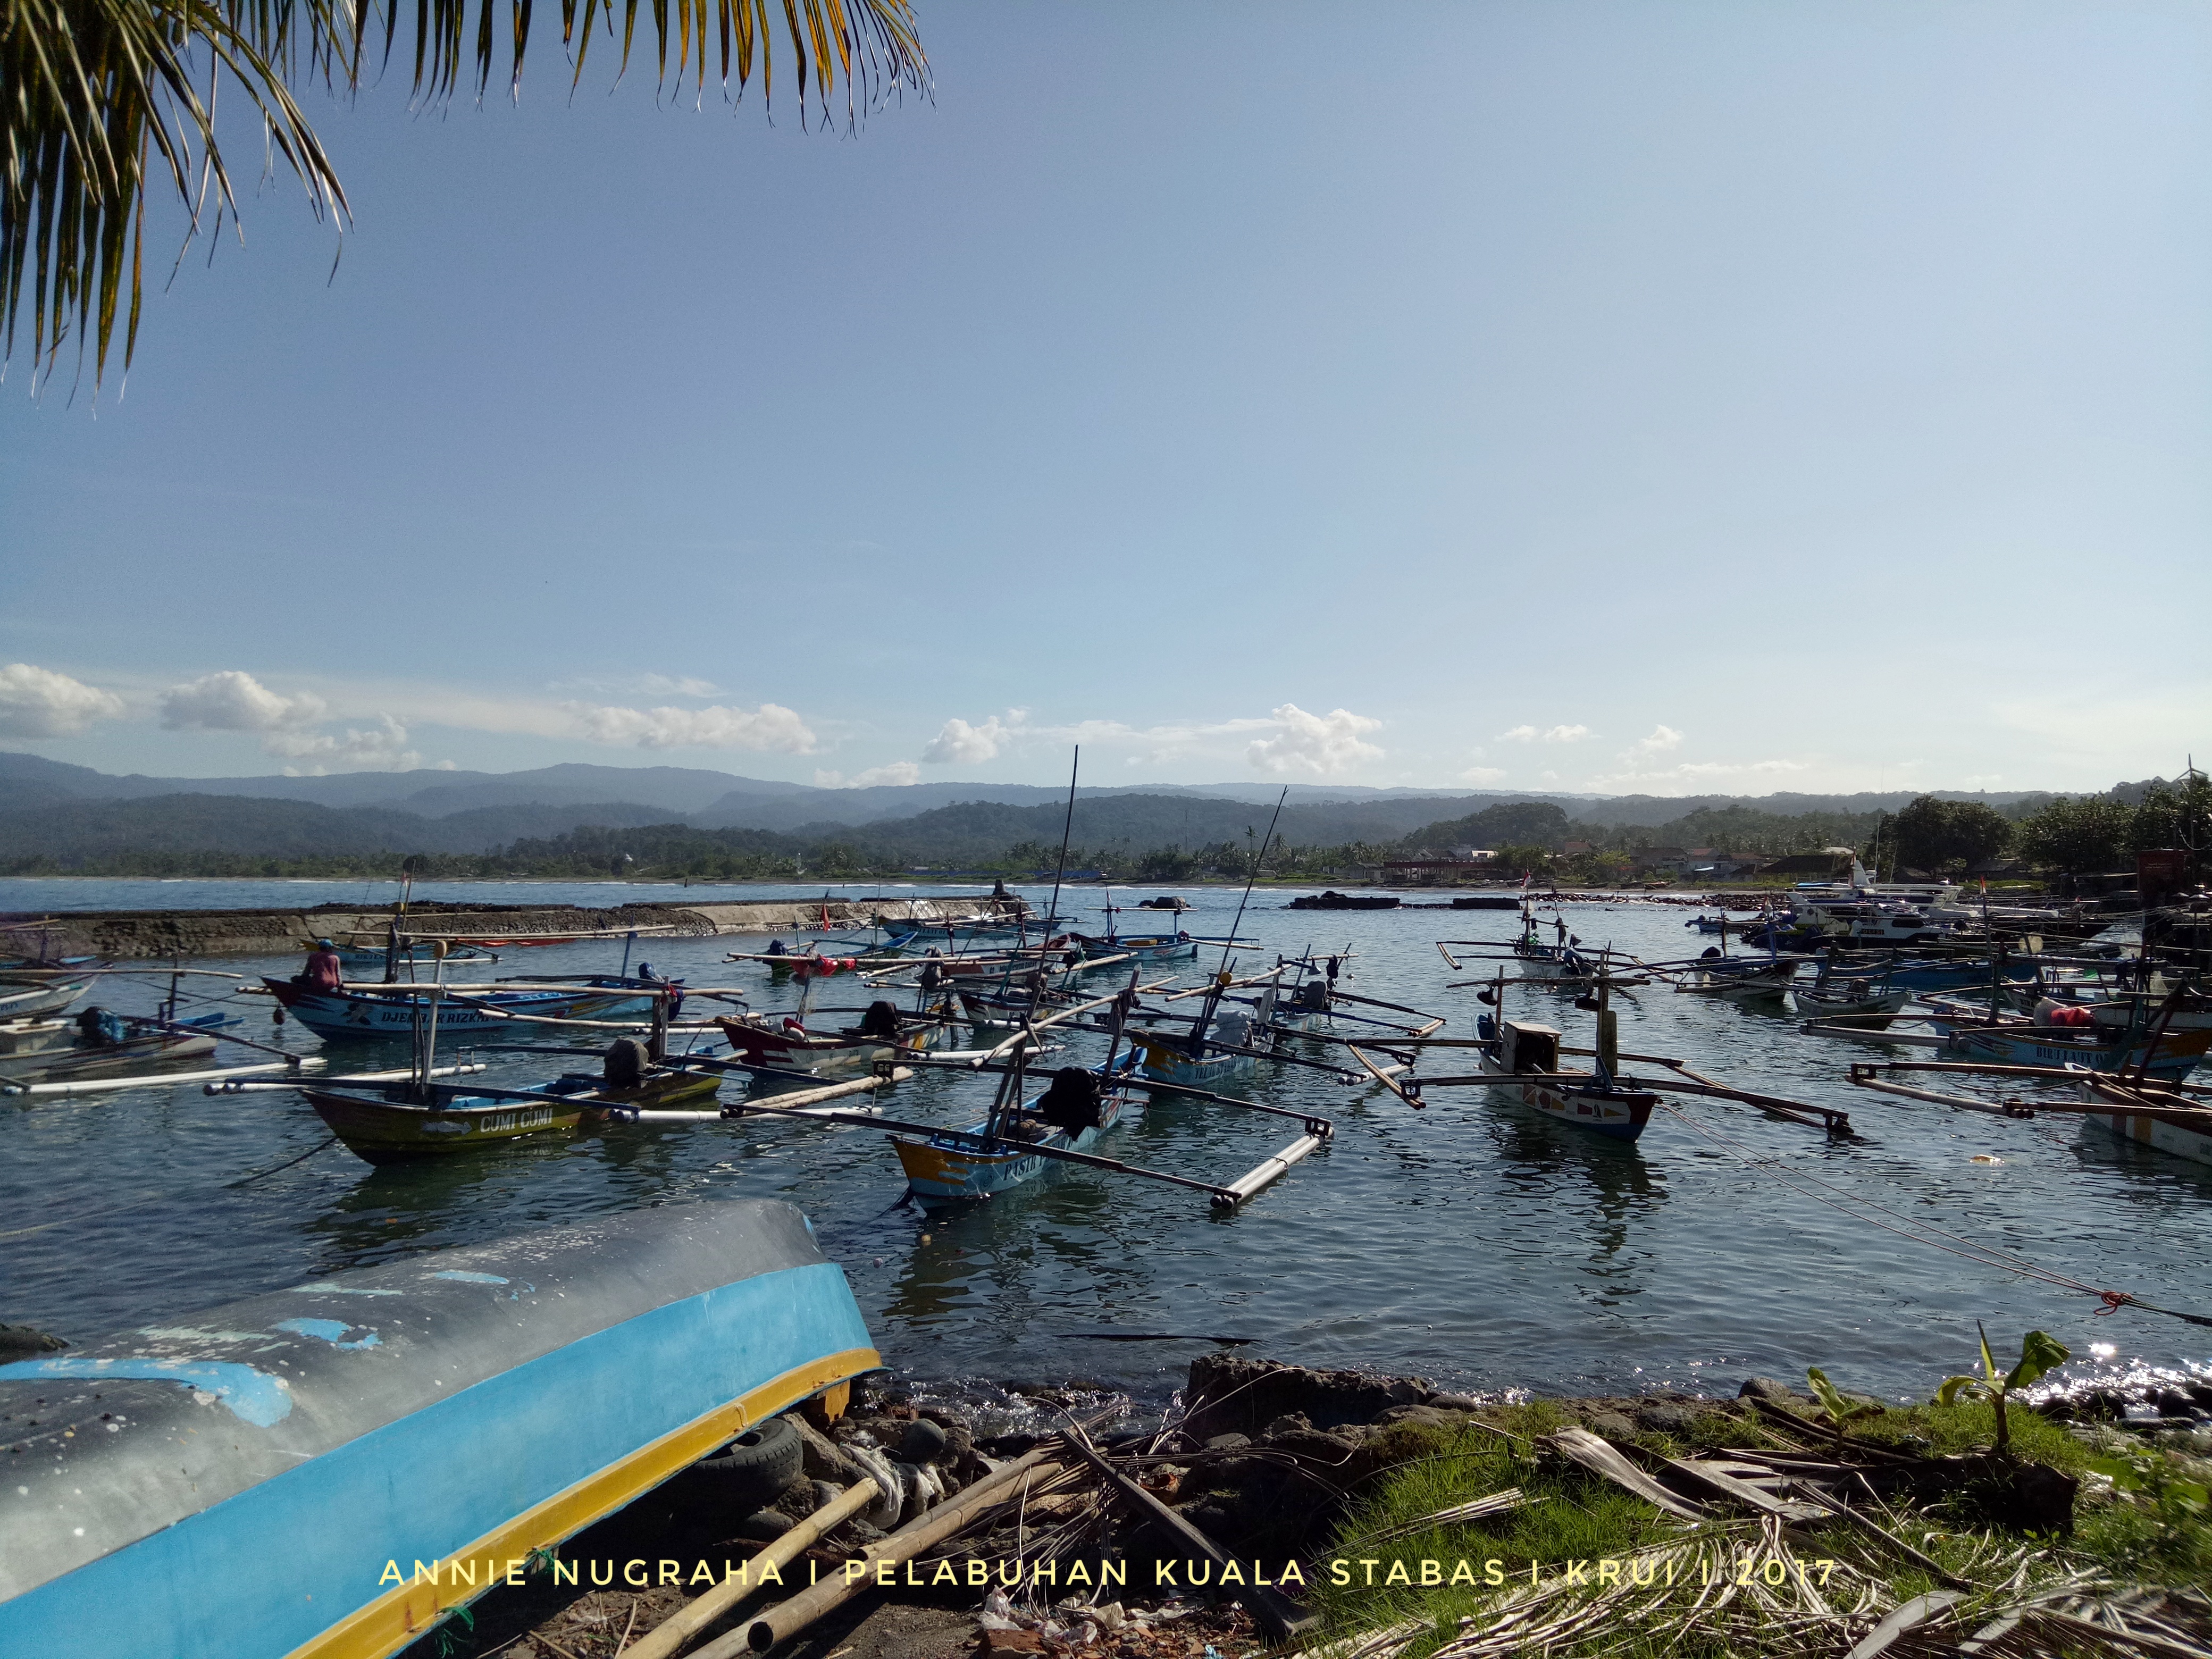 Hatiku Tertambat di Pulau Pisang - Kisah Perjalanan Seru di Pesisir Barat Lampung